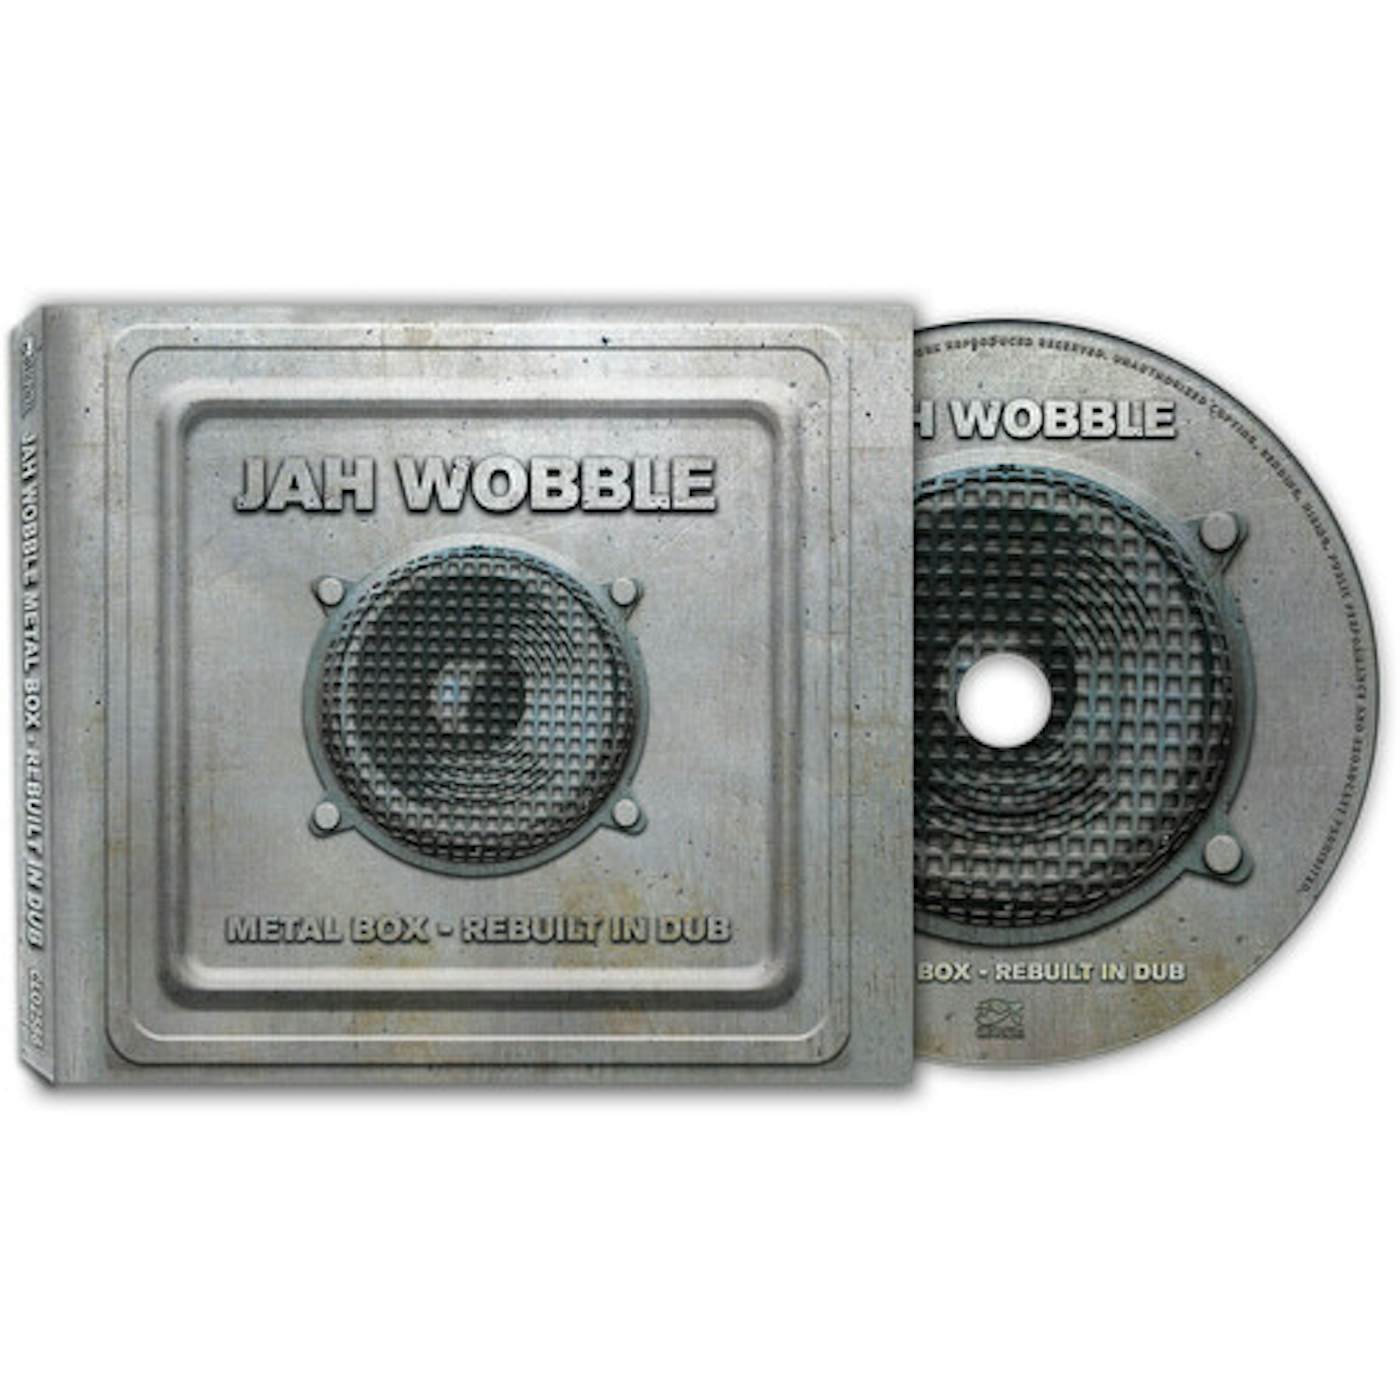 Jah Wobble METAL BOX - REBUILT IN DUB CD